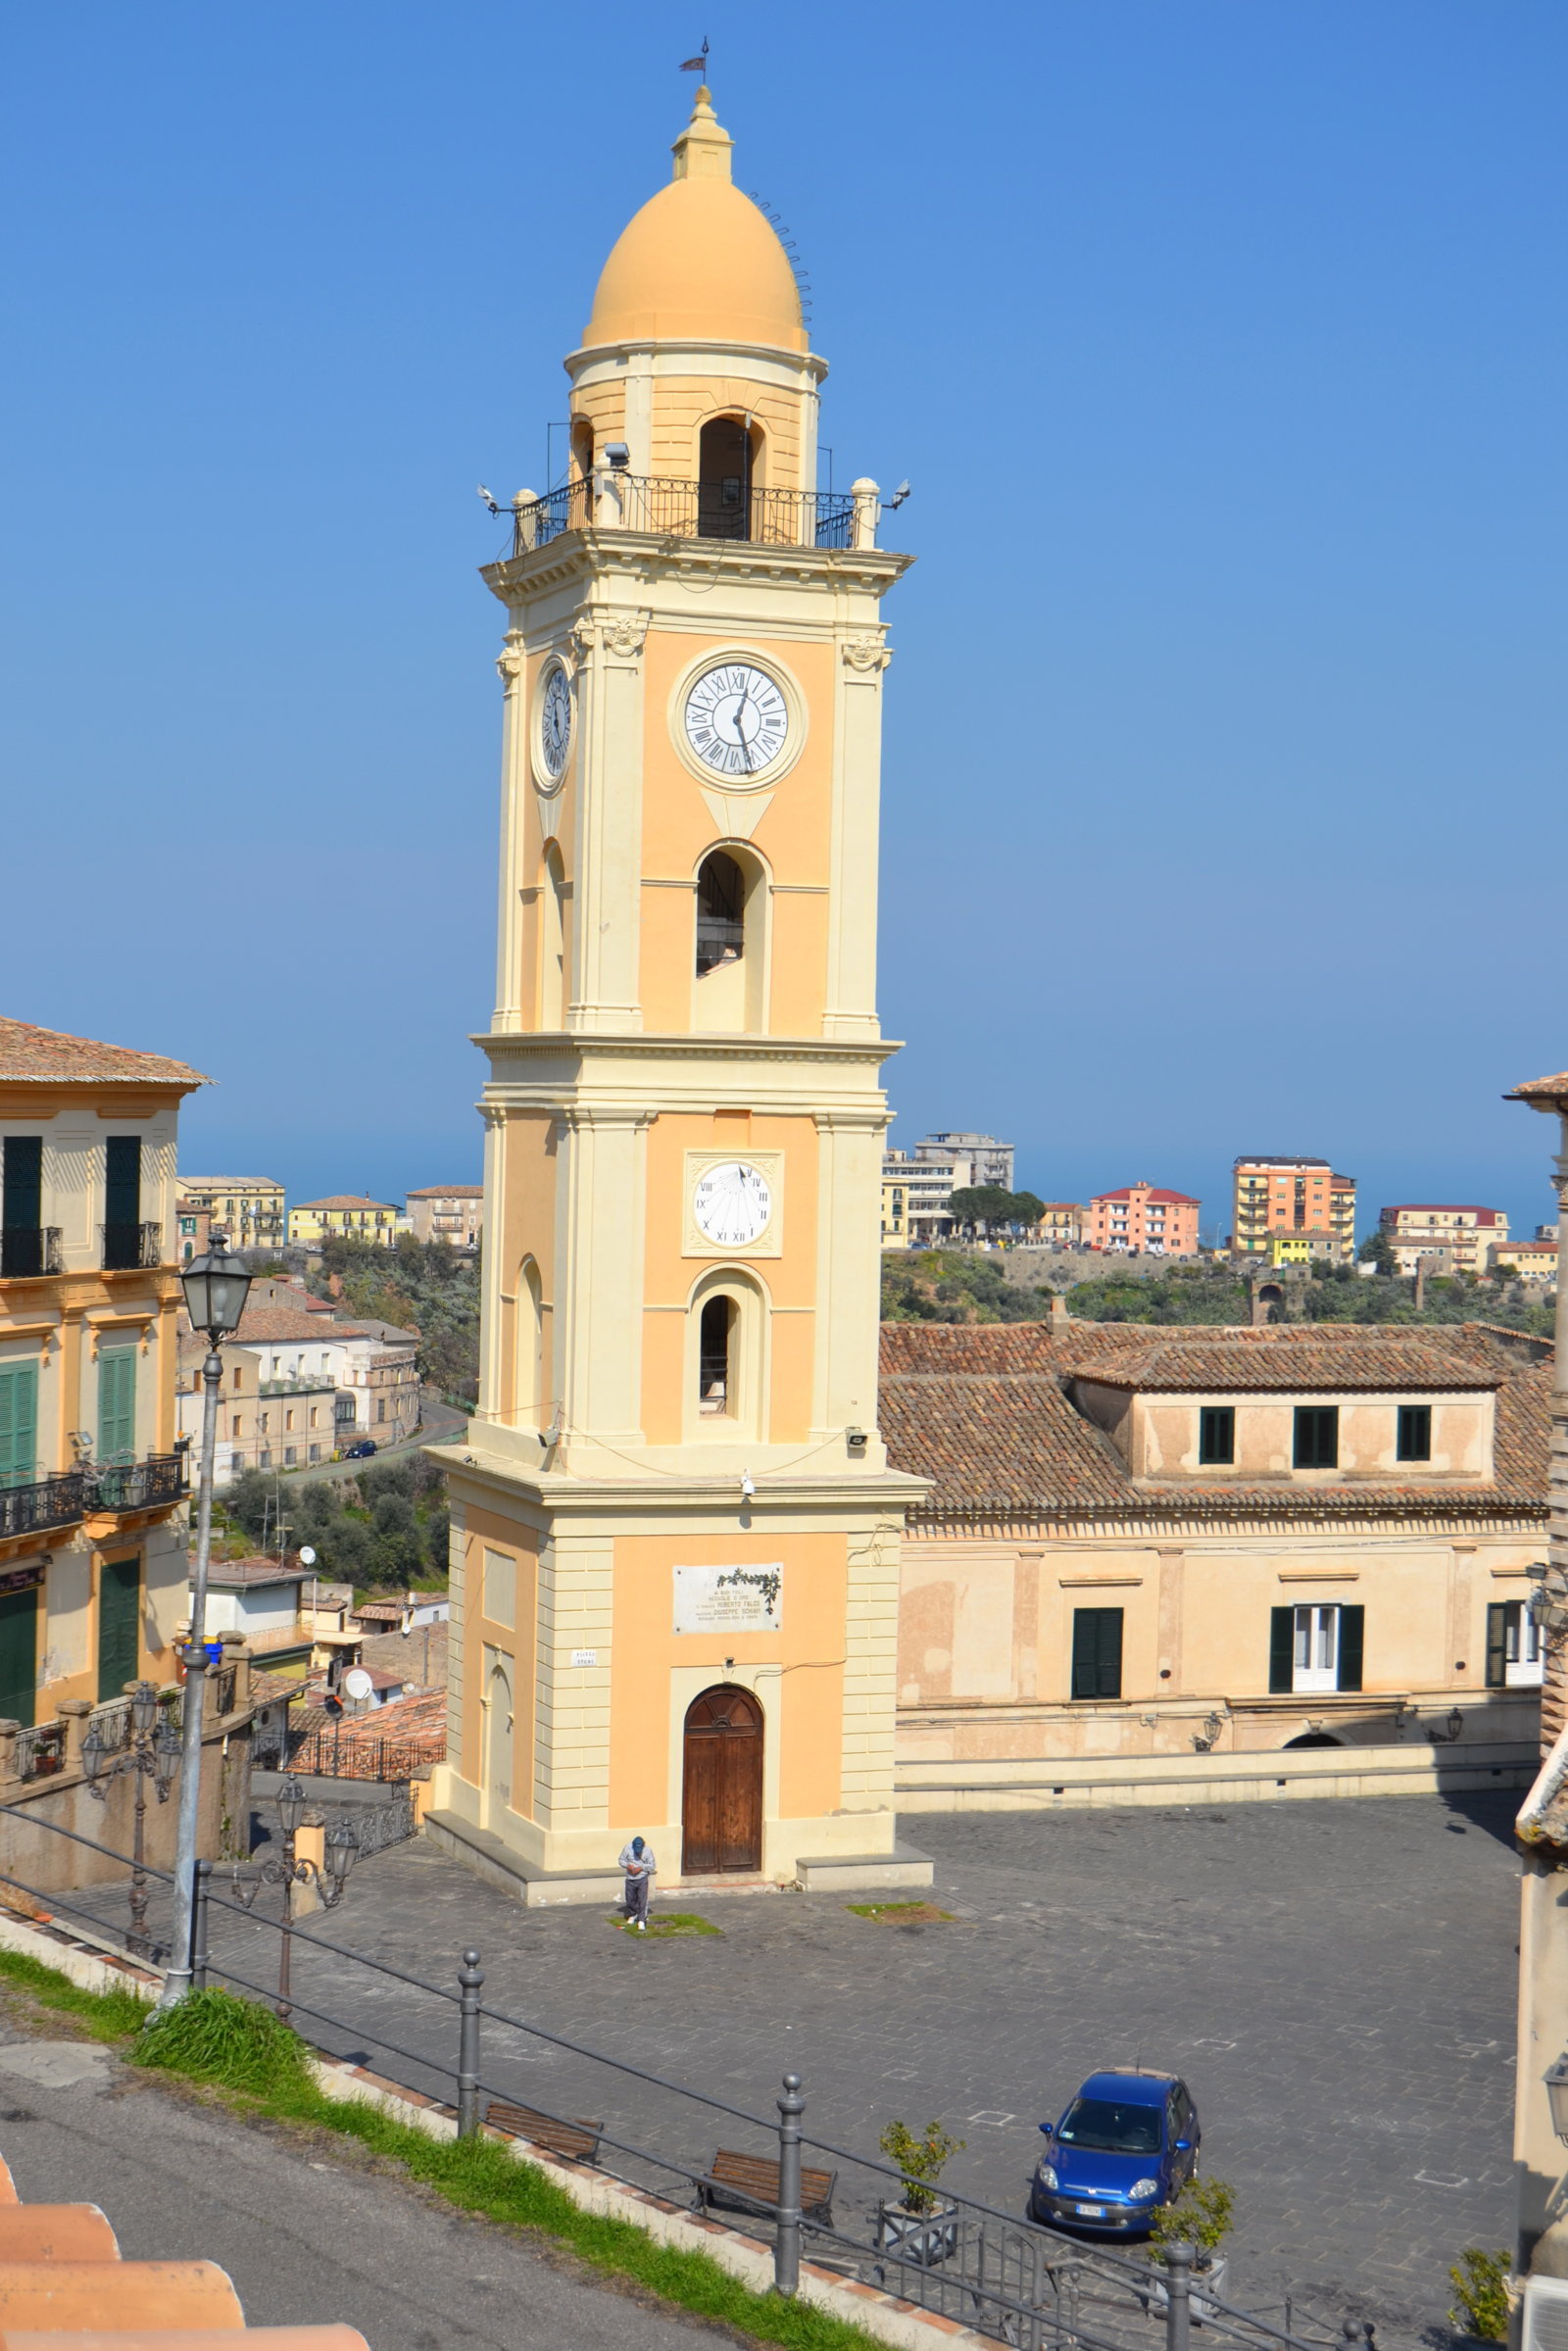 Rossano - Tour - Escursione - Guide Turistiche Associate Calabria - Italy